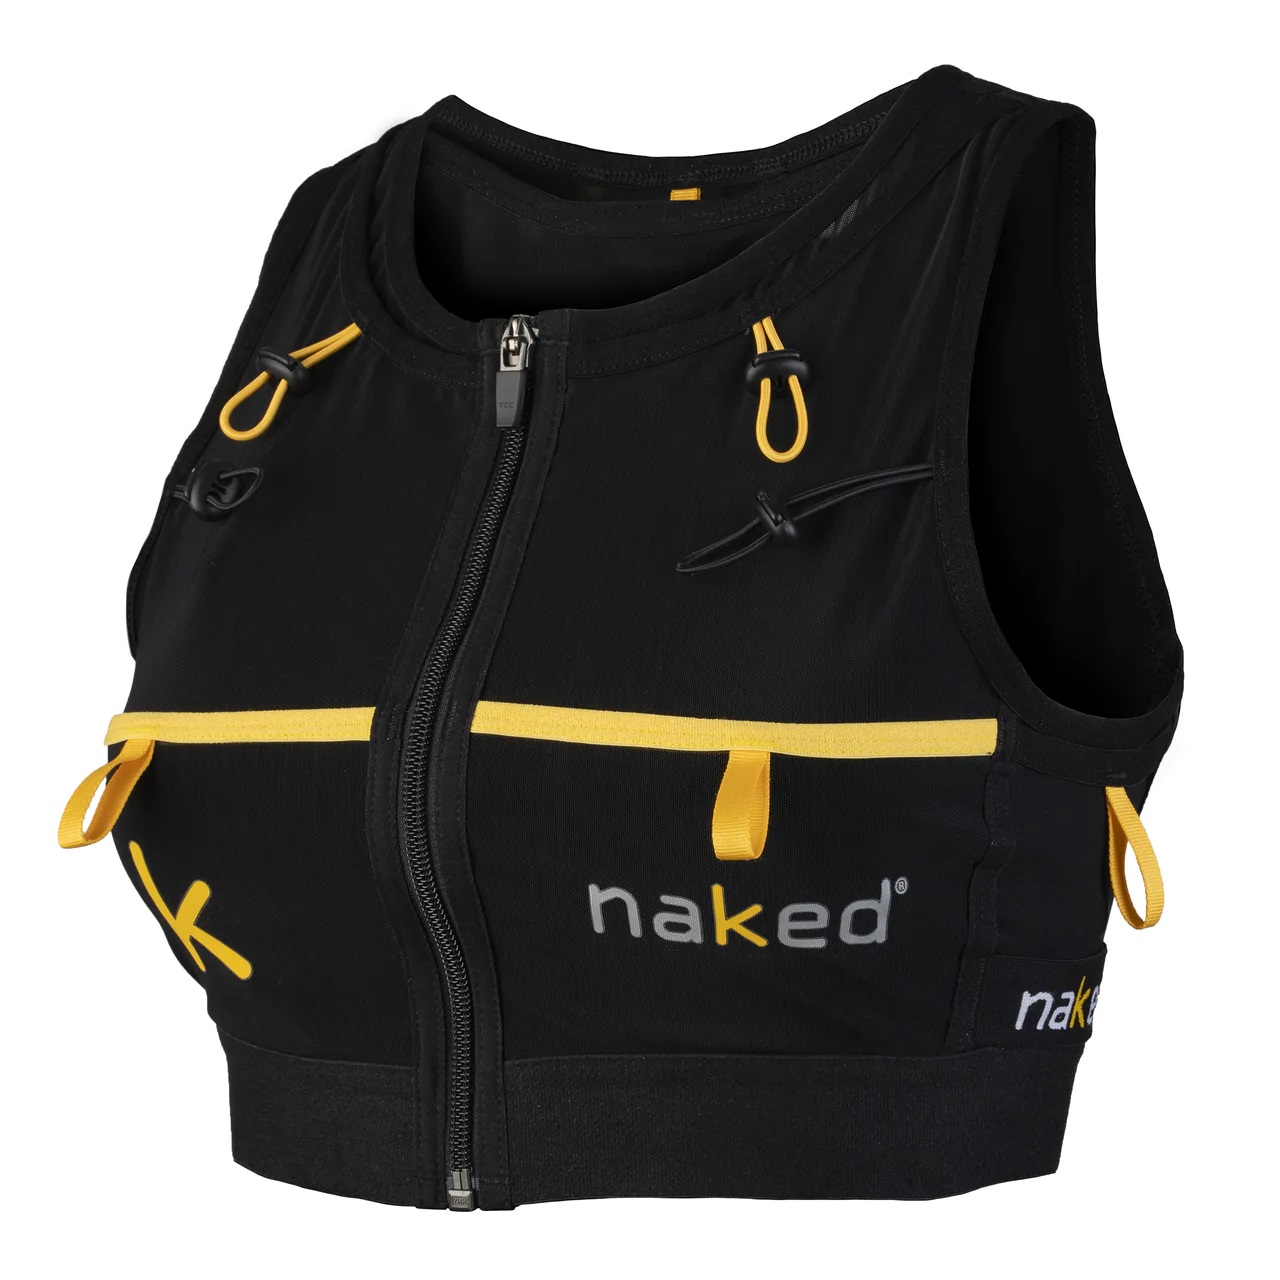 Naked High Capacity Women's Running Vest